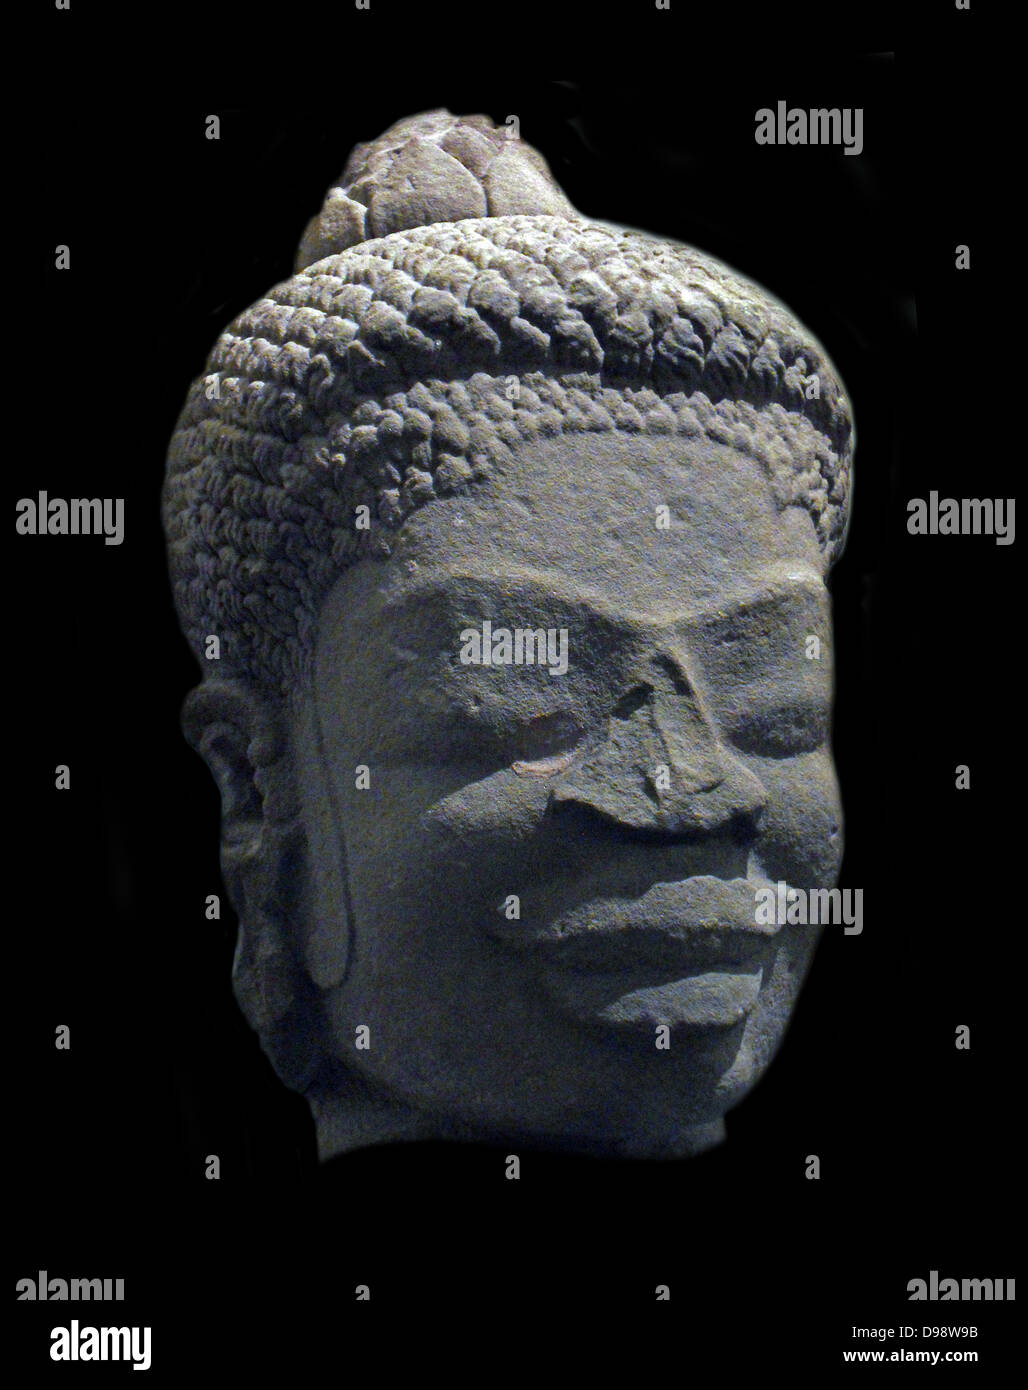 Vairocana (9 -10) Sandstein, Skulptur von Dong Duong in Vietnam. Vairocana (auch Vairochana oder Mahavairocana) ist eine himmlische Buddha, wird oft als die Glückseligkeit der historischen Gautama Buddha interpretiert; er kann auch als der Dharmakaya Buddha und die großen Solar Buddha bezeichnet werden. Stockfoto